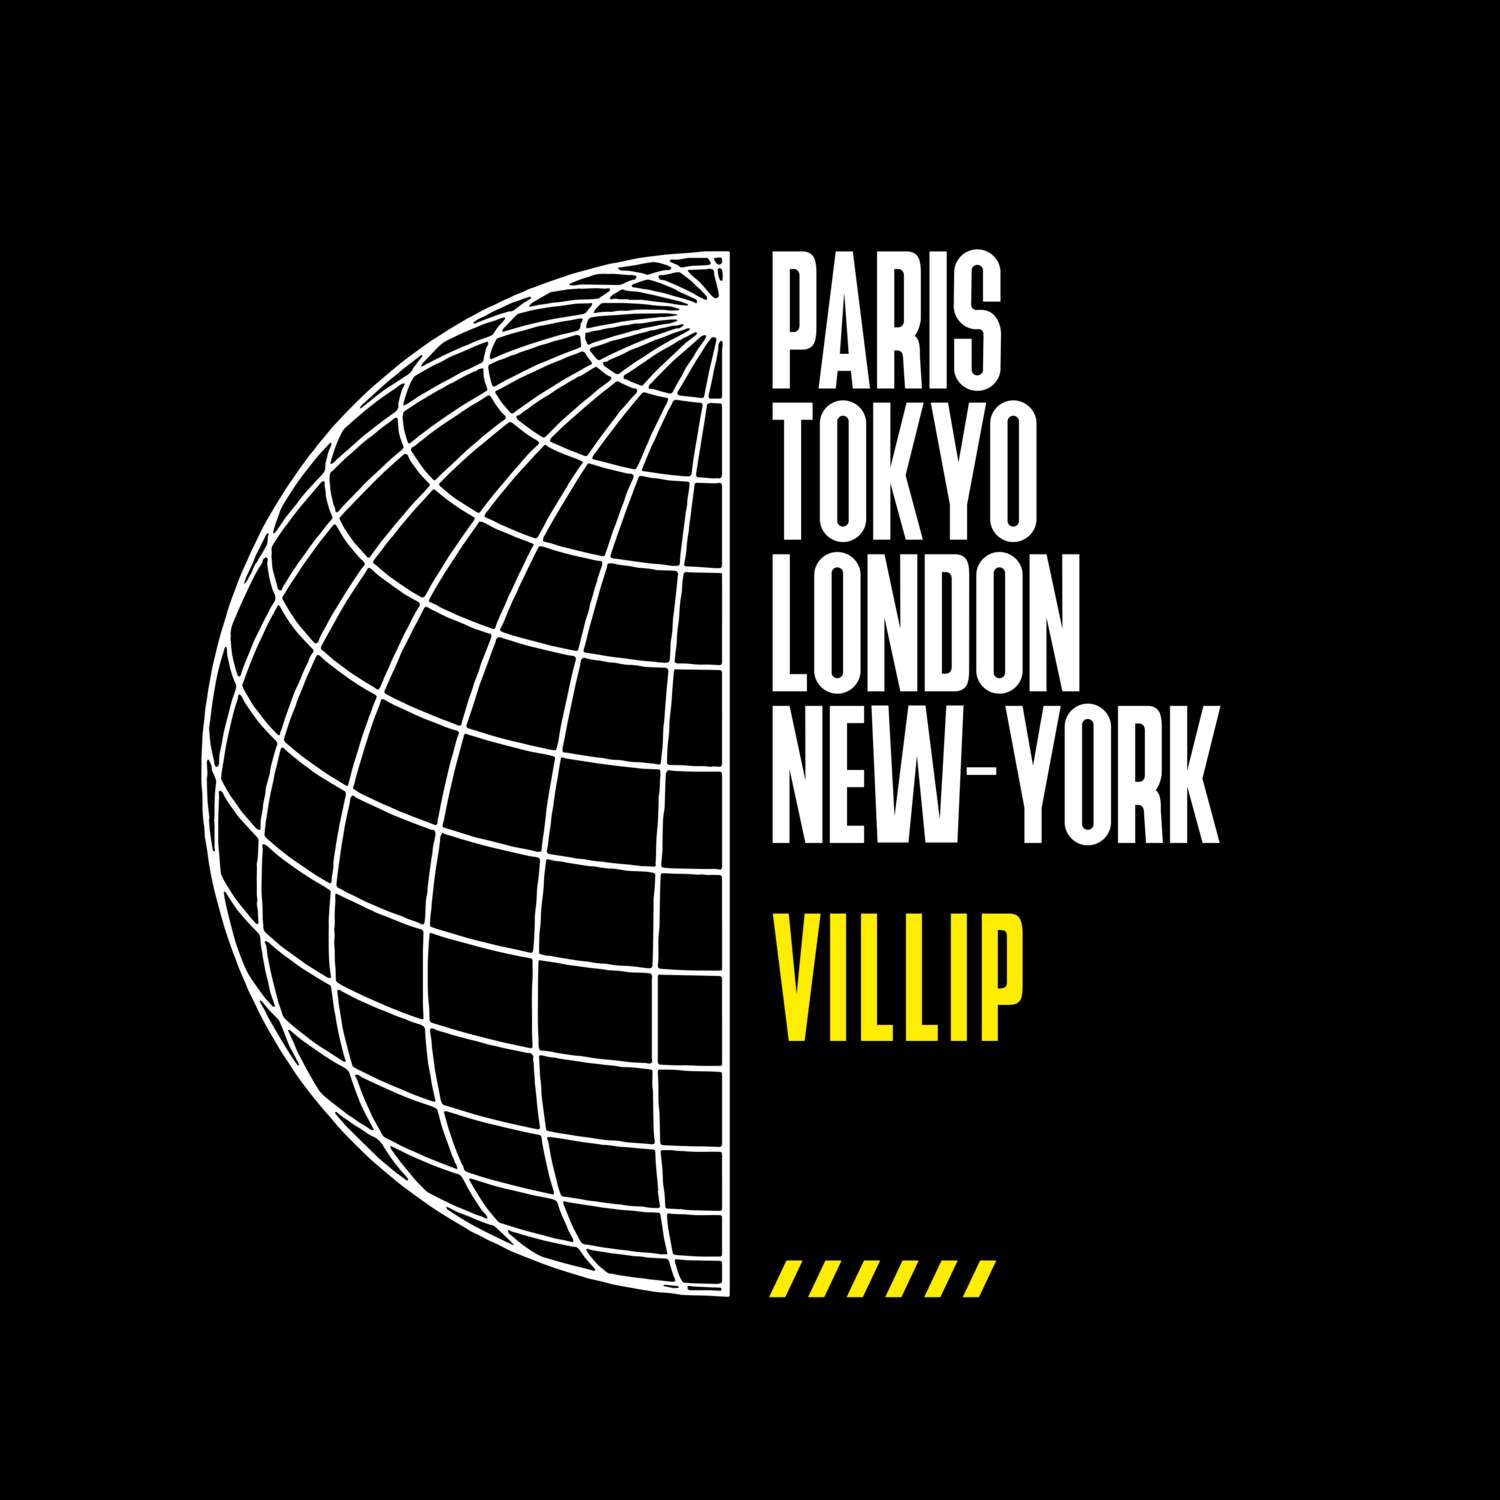 Villip T-Shirt »Paris Tokyo London«